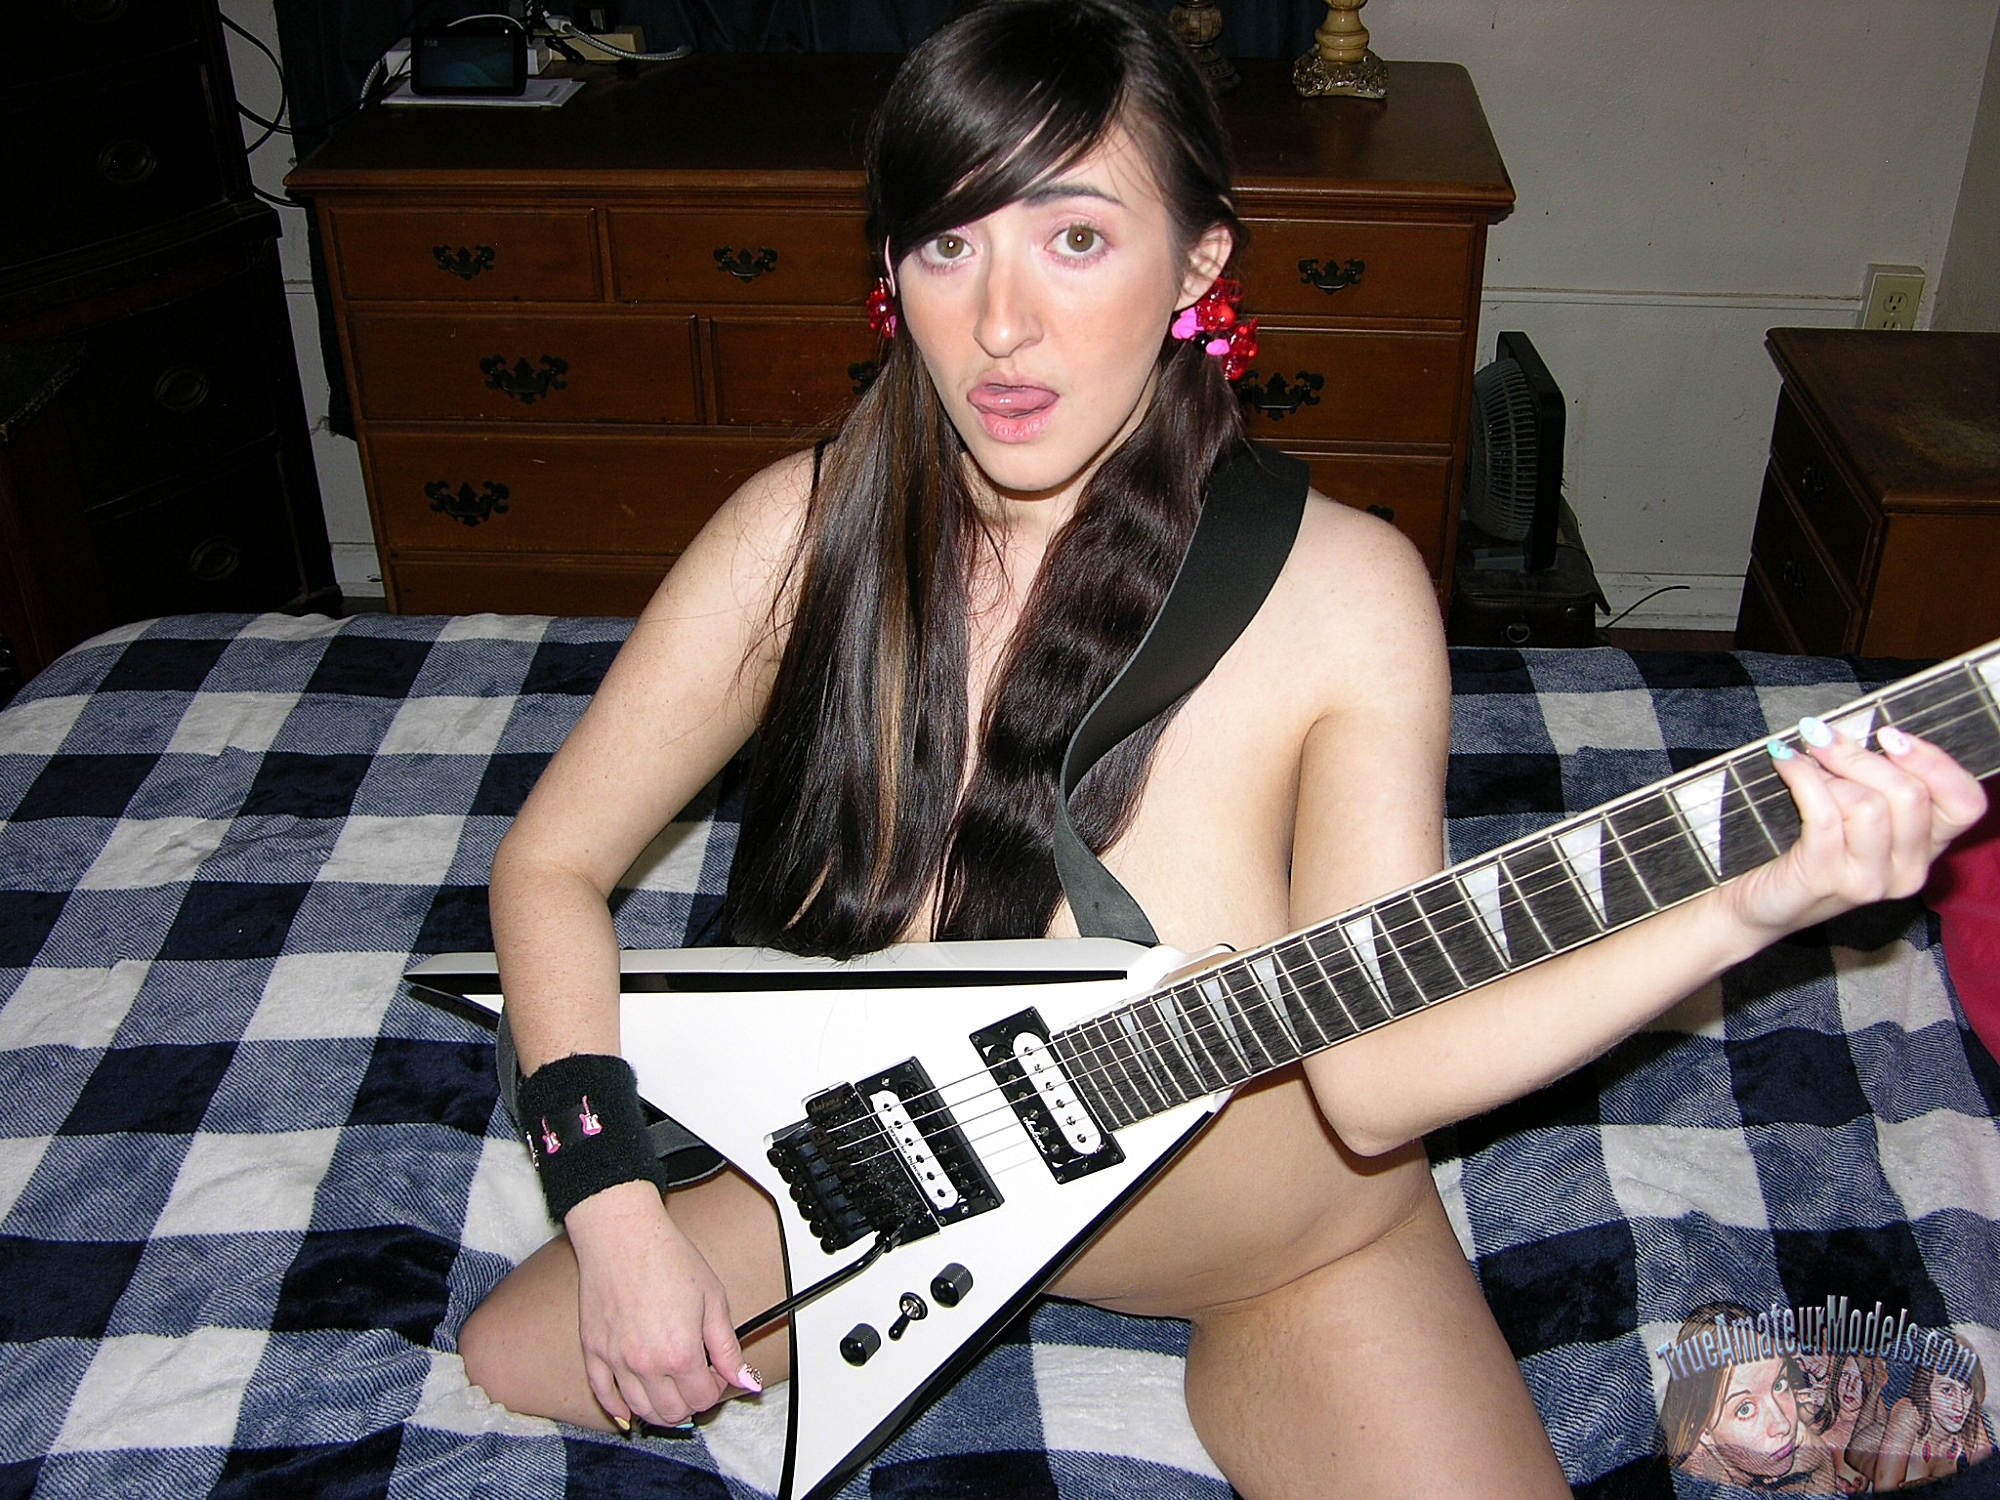 wpid-nude-heavy-metal-guitar-babe15.jpg